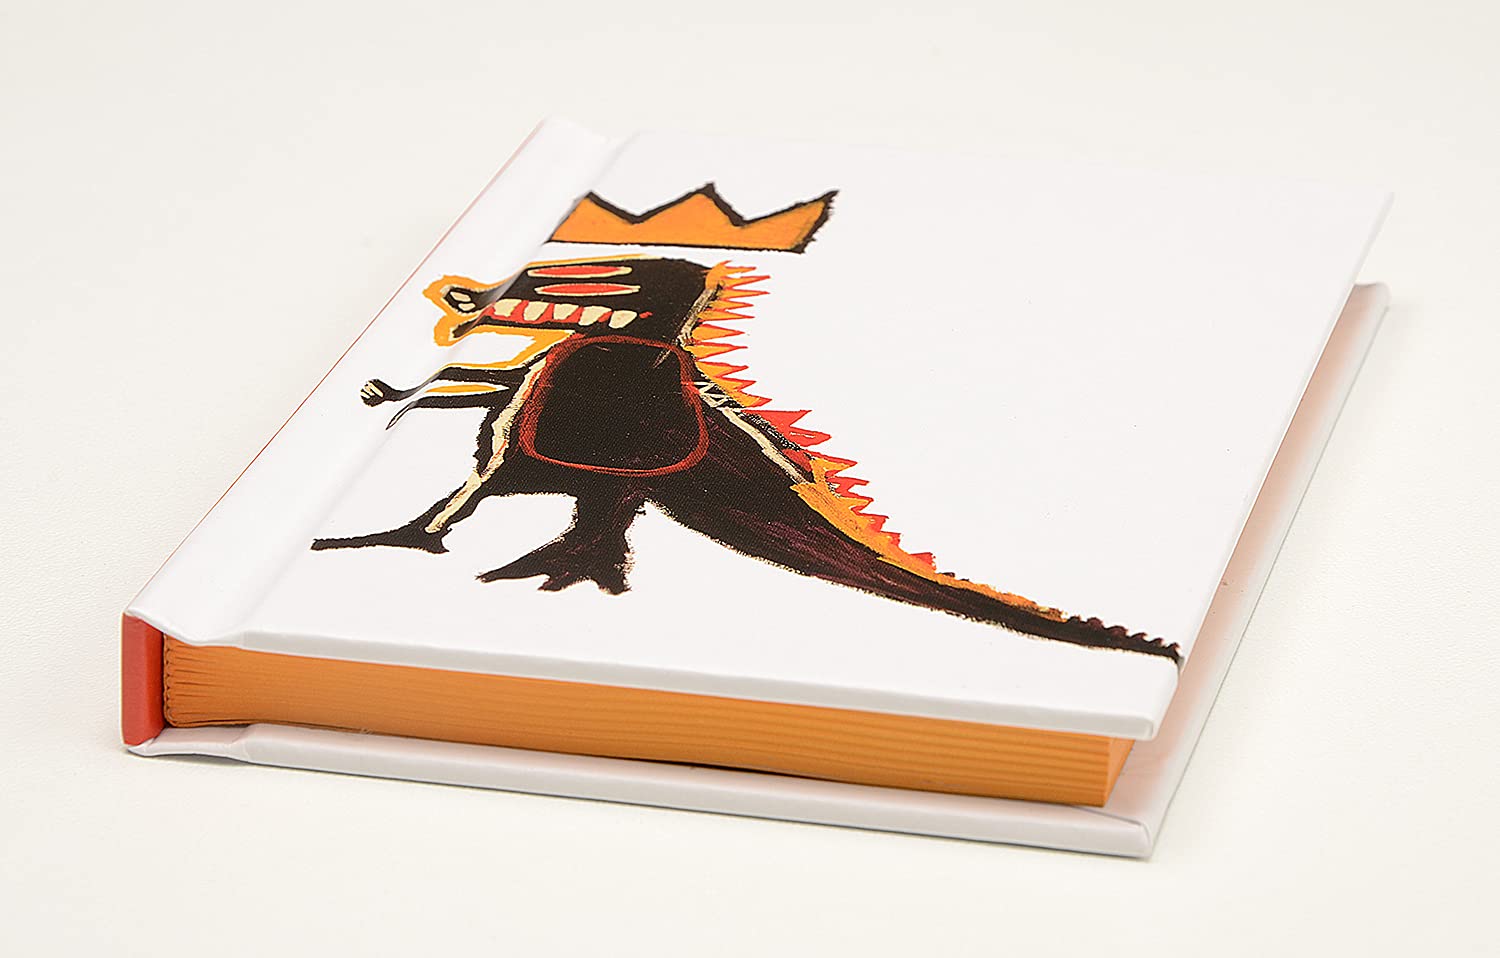 Jean-Michel Basquiat, Dino Mini Notebook